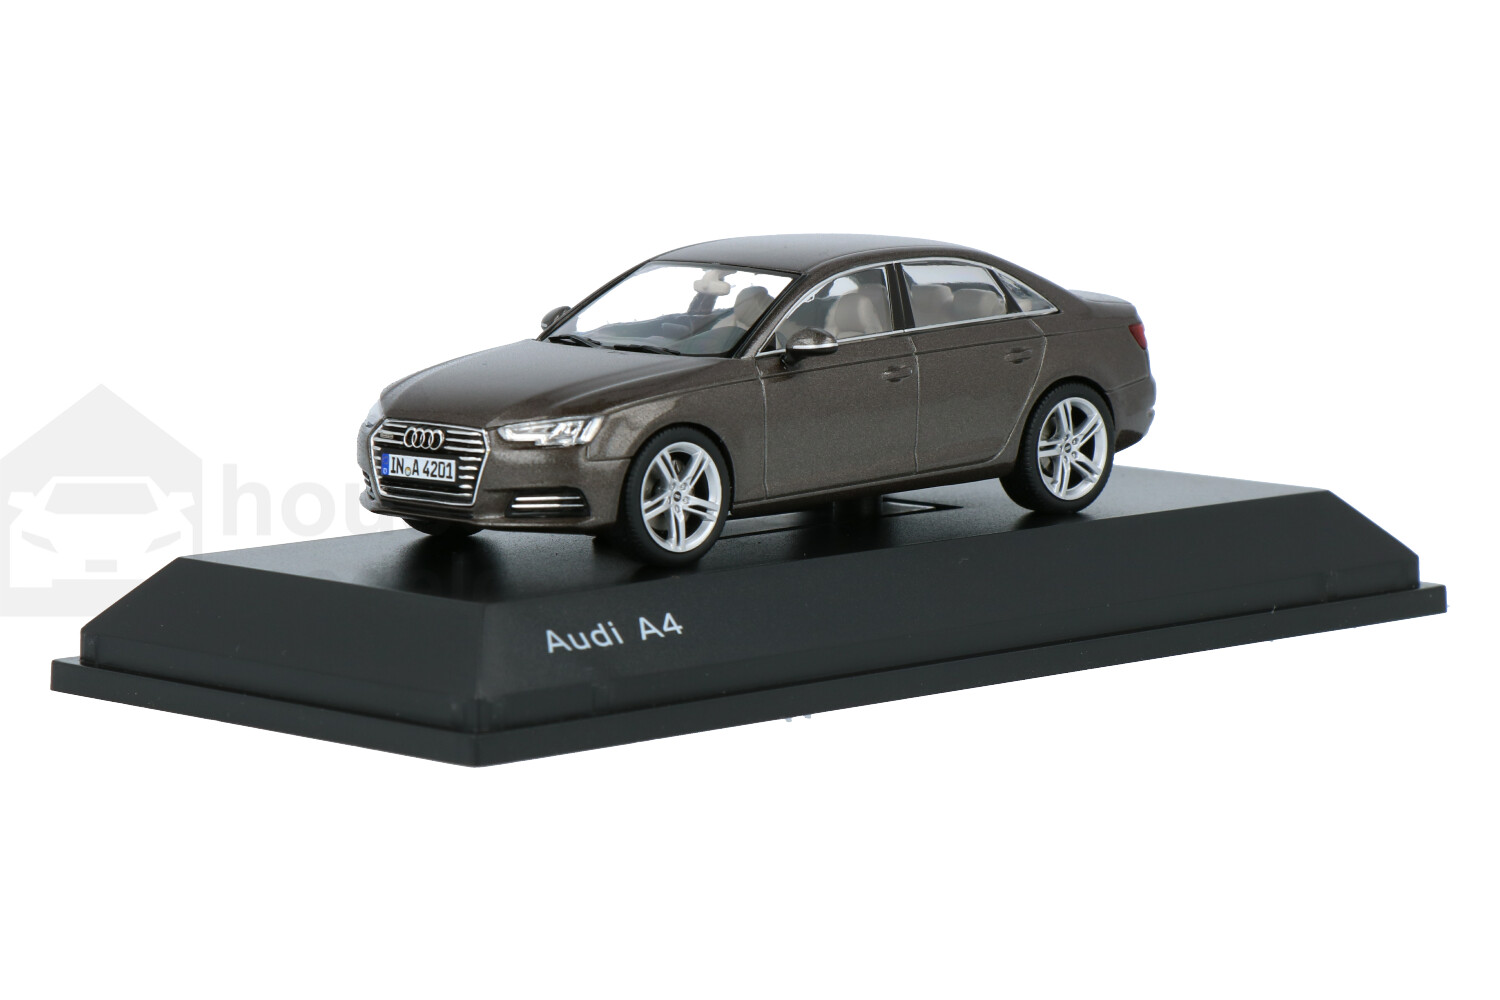 Audi-A4-501.15.041.33_13152160000039832-SparkAudi-A4-501.15.041.33_Houseofmodelcars_.jpg